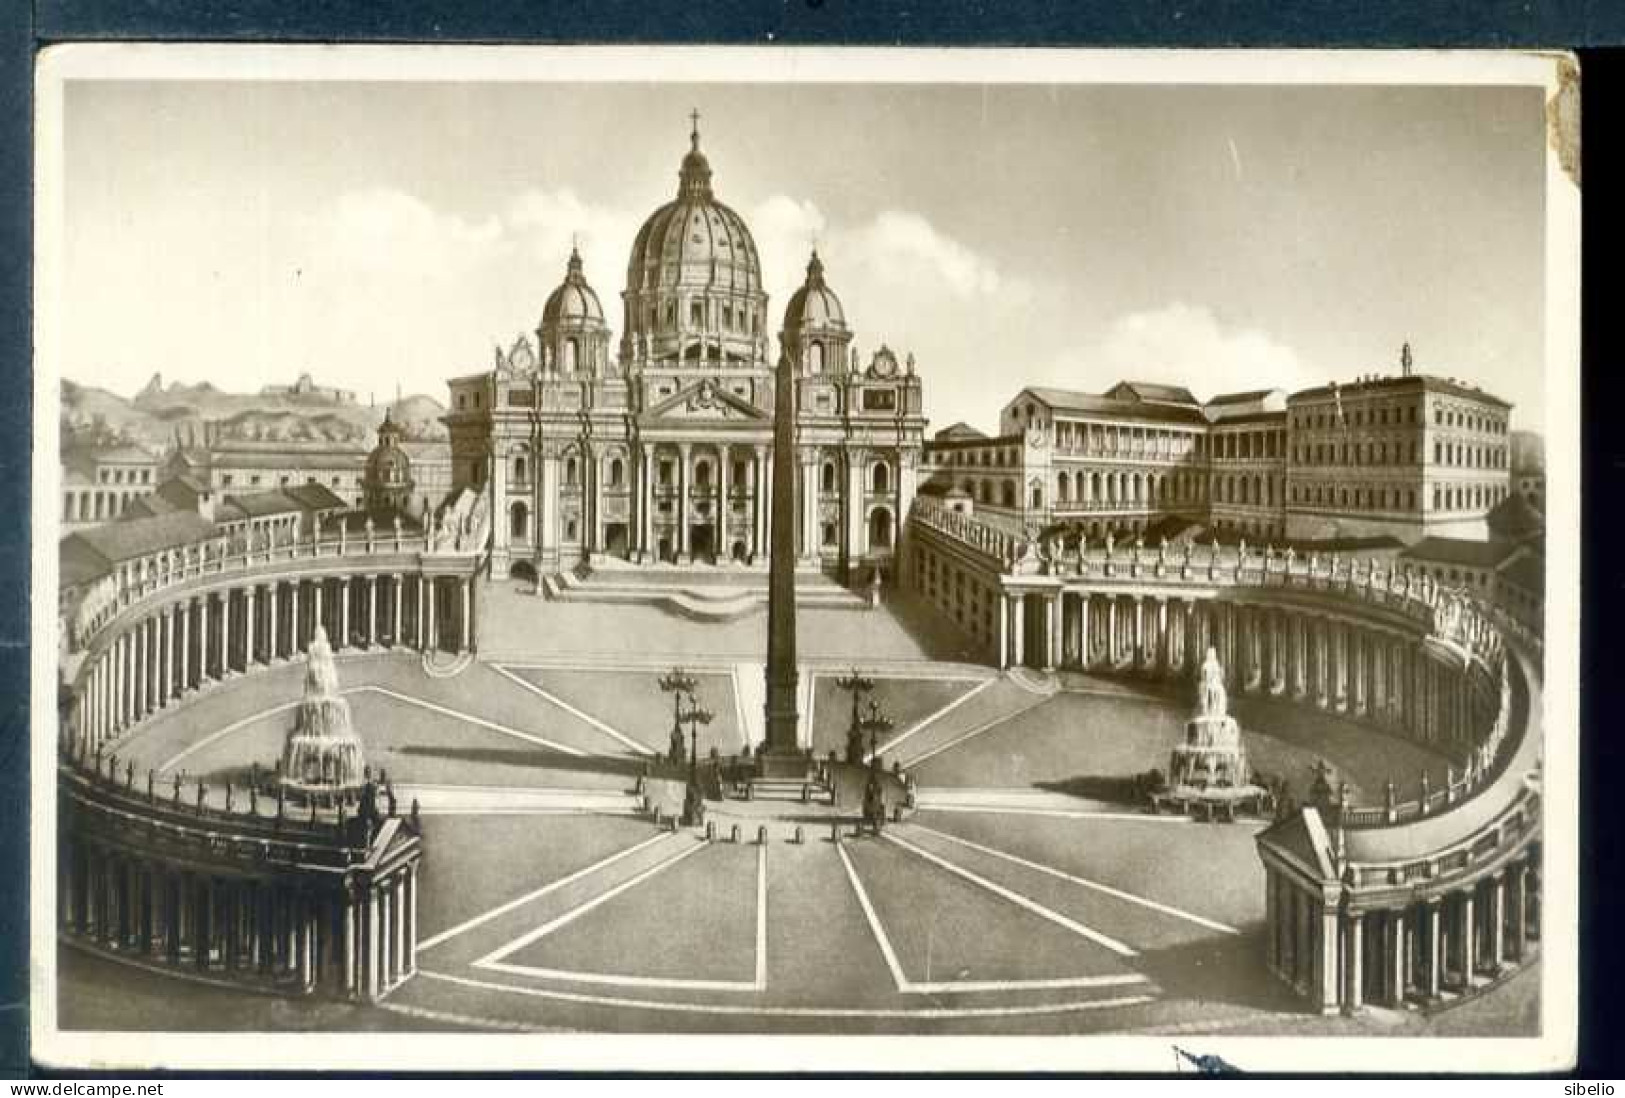 Roma - dieci cartoline antiche - rif. 2